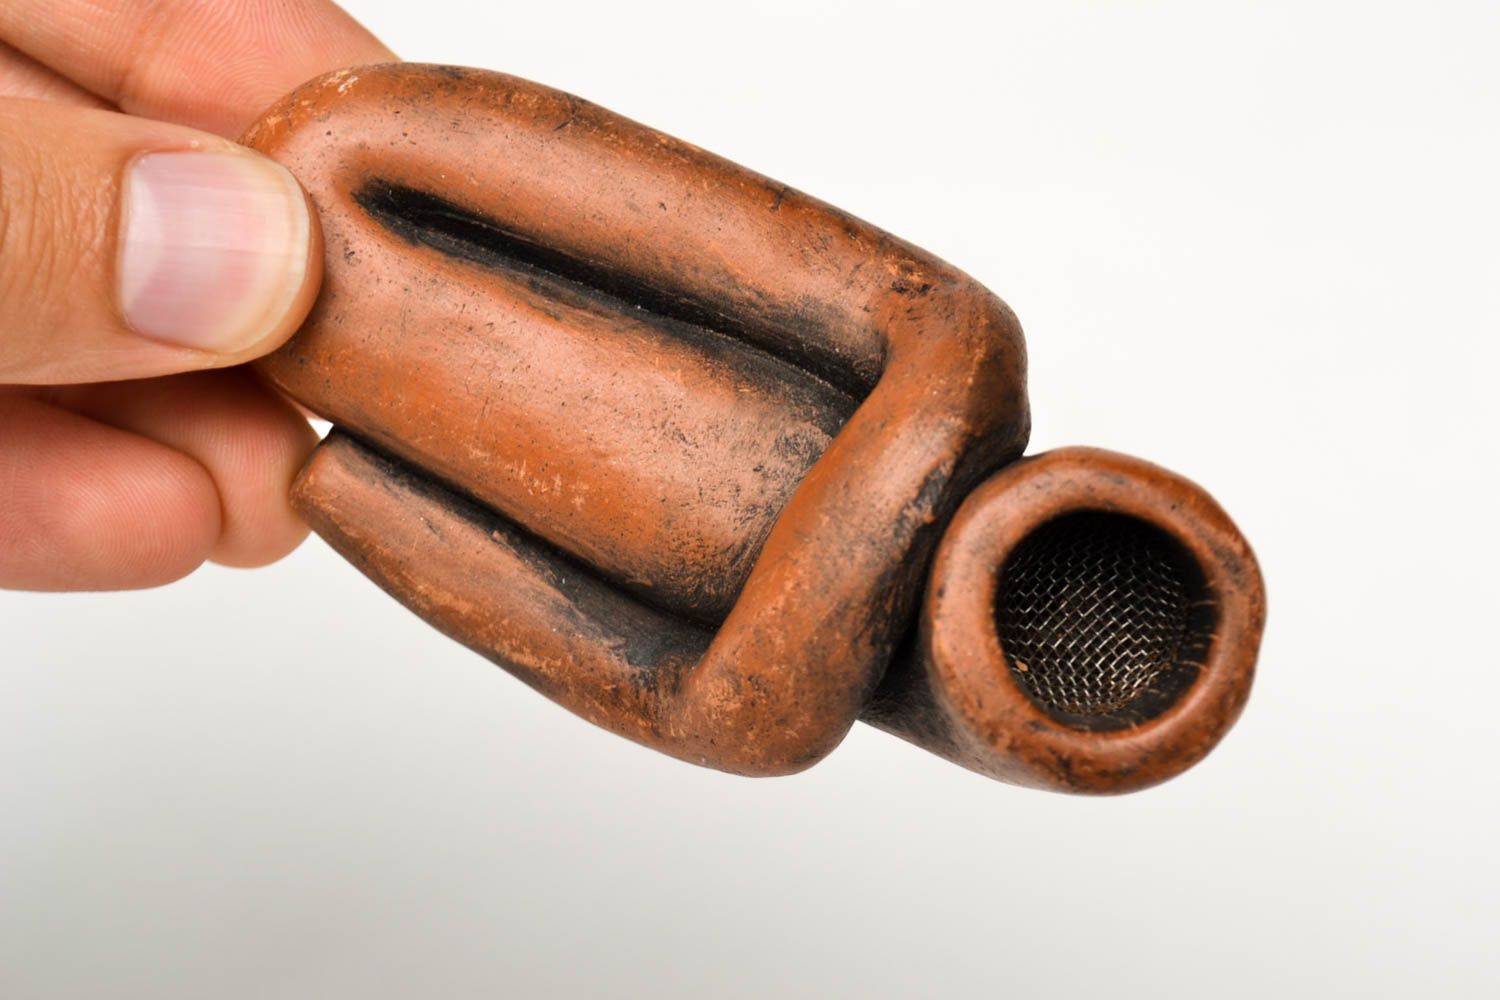 Трубка для курения ручной работы курительная трубка глина аксессуар для курения фото 2